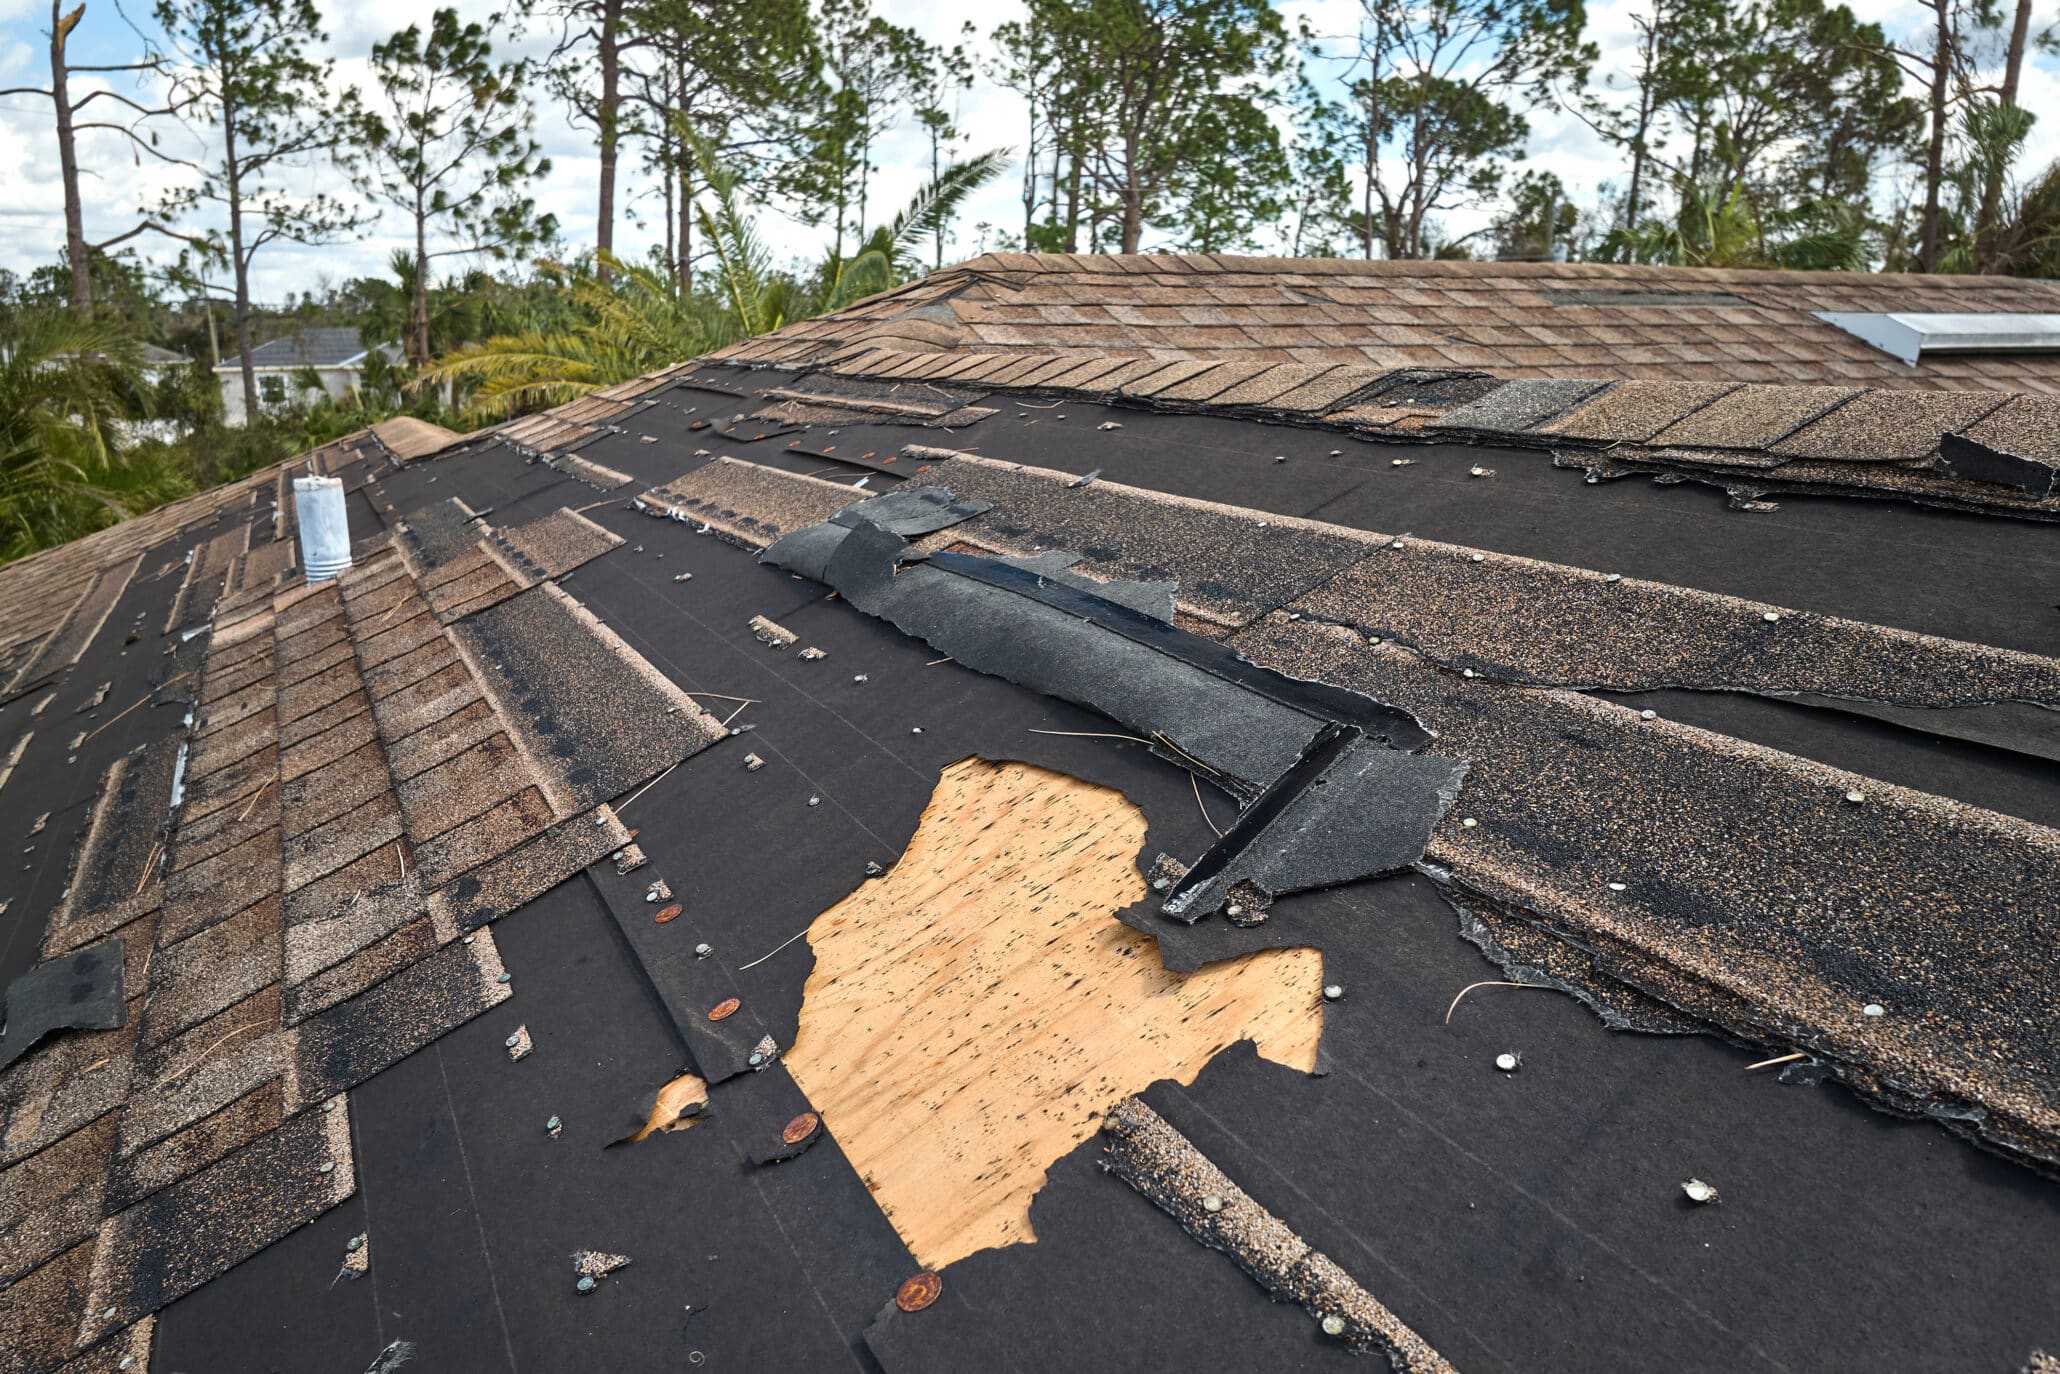 Damaged house roof